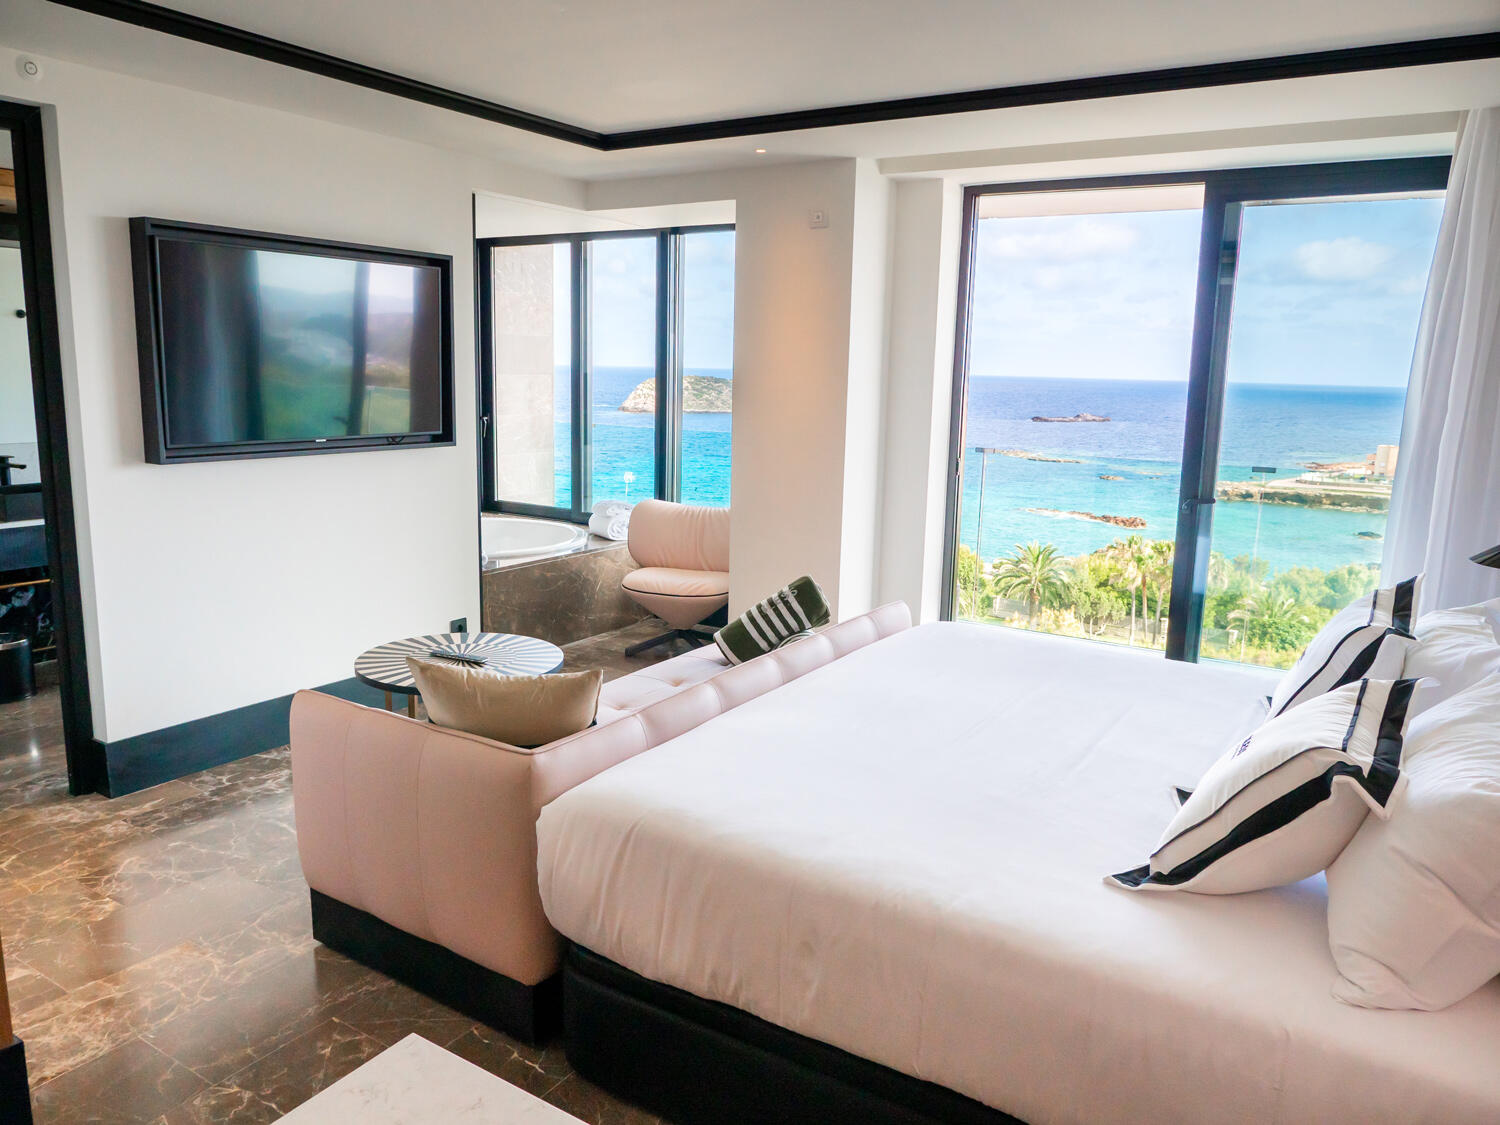 Hotelzimmer im Bless Hotel Ibiza mit Doppelbett und rosaner Couch und großen Glastüren, die Blick auf das Meer geben.